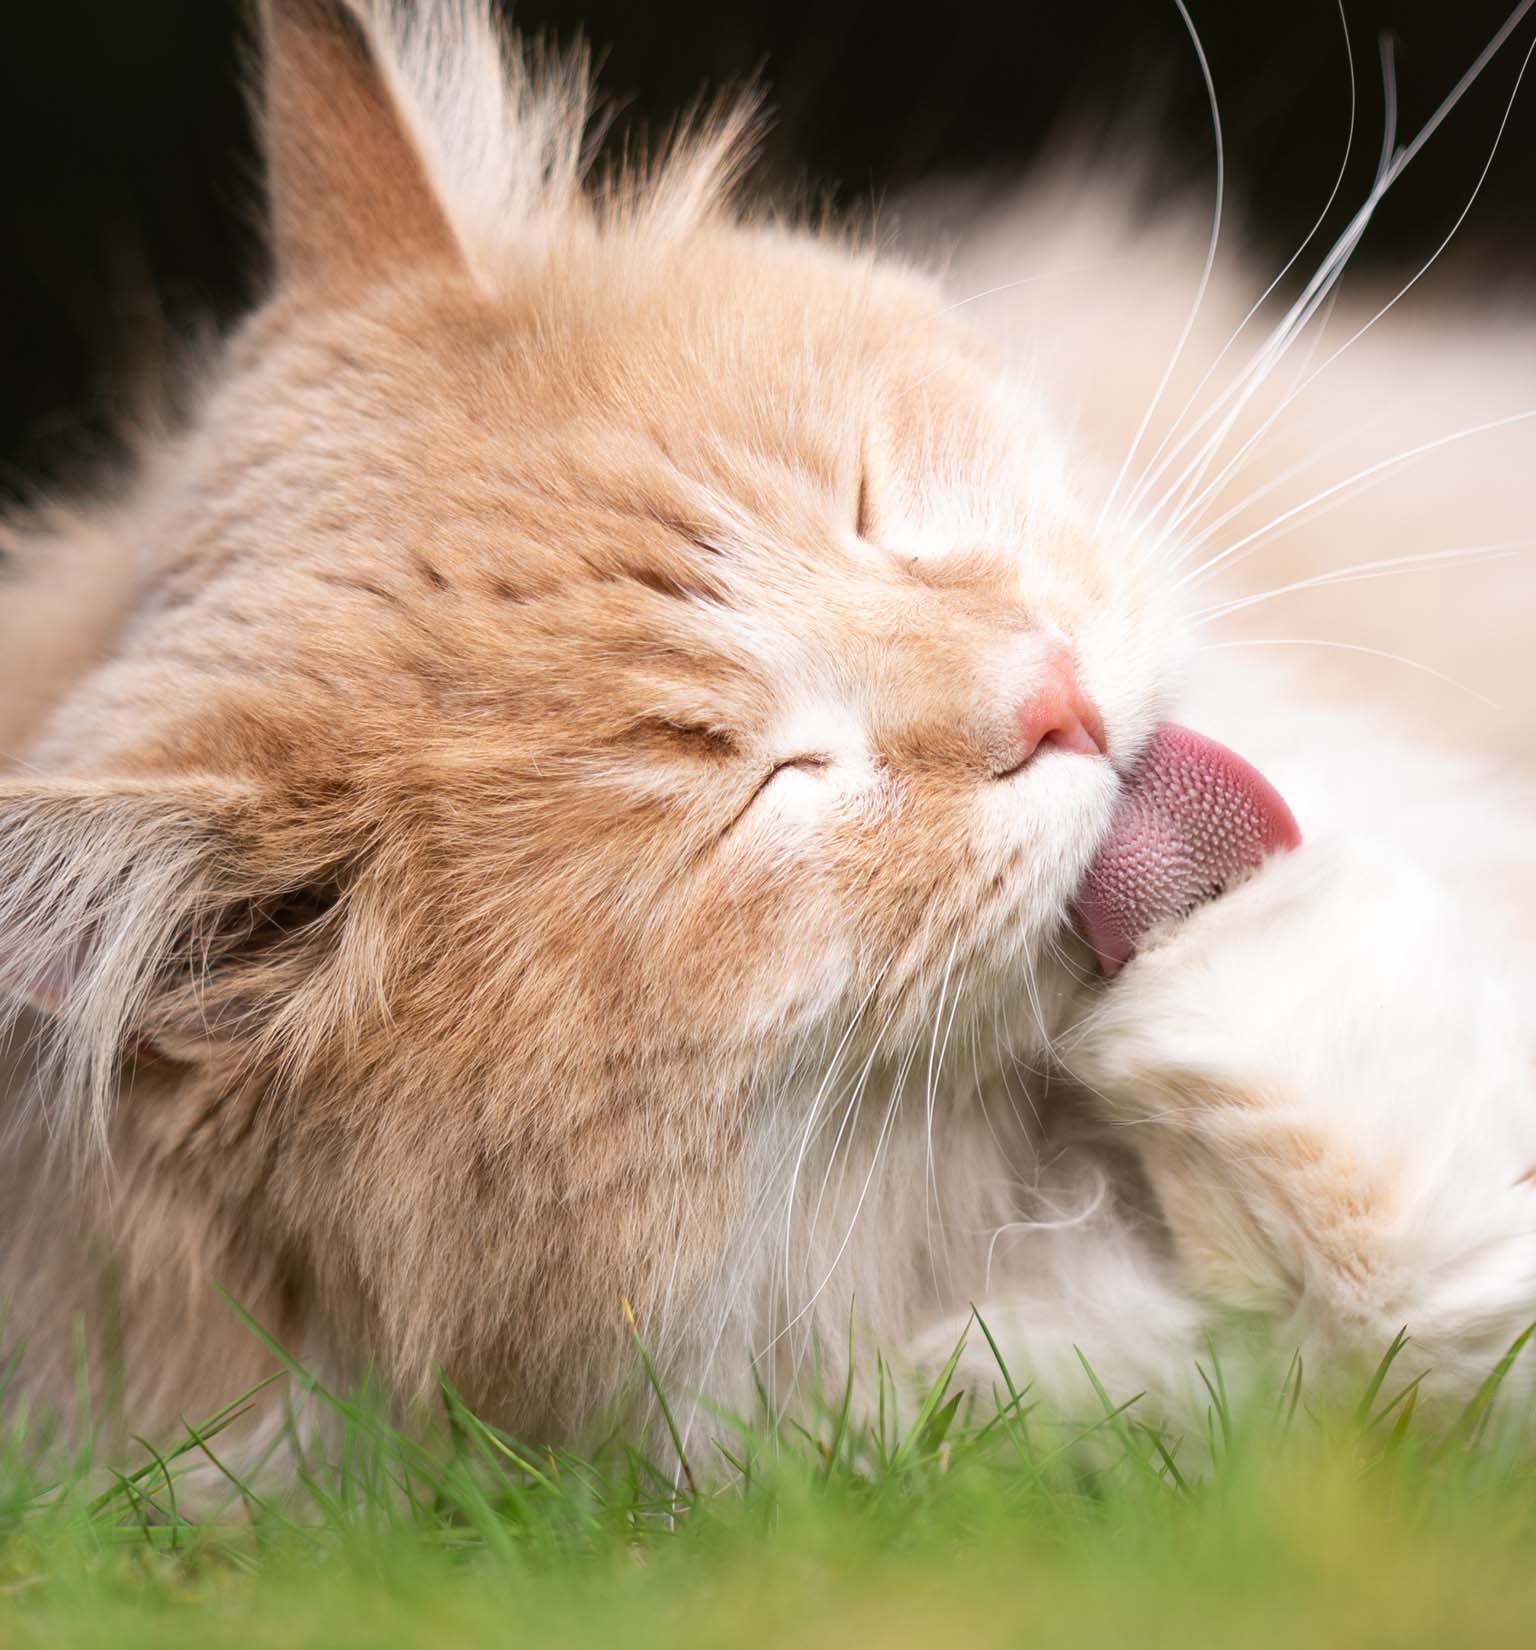 ¿Por qué los gatos vomitan bolas de pelo?